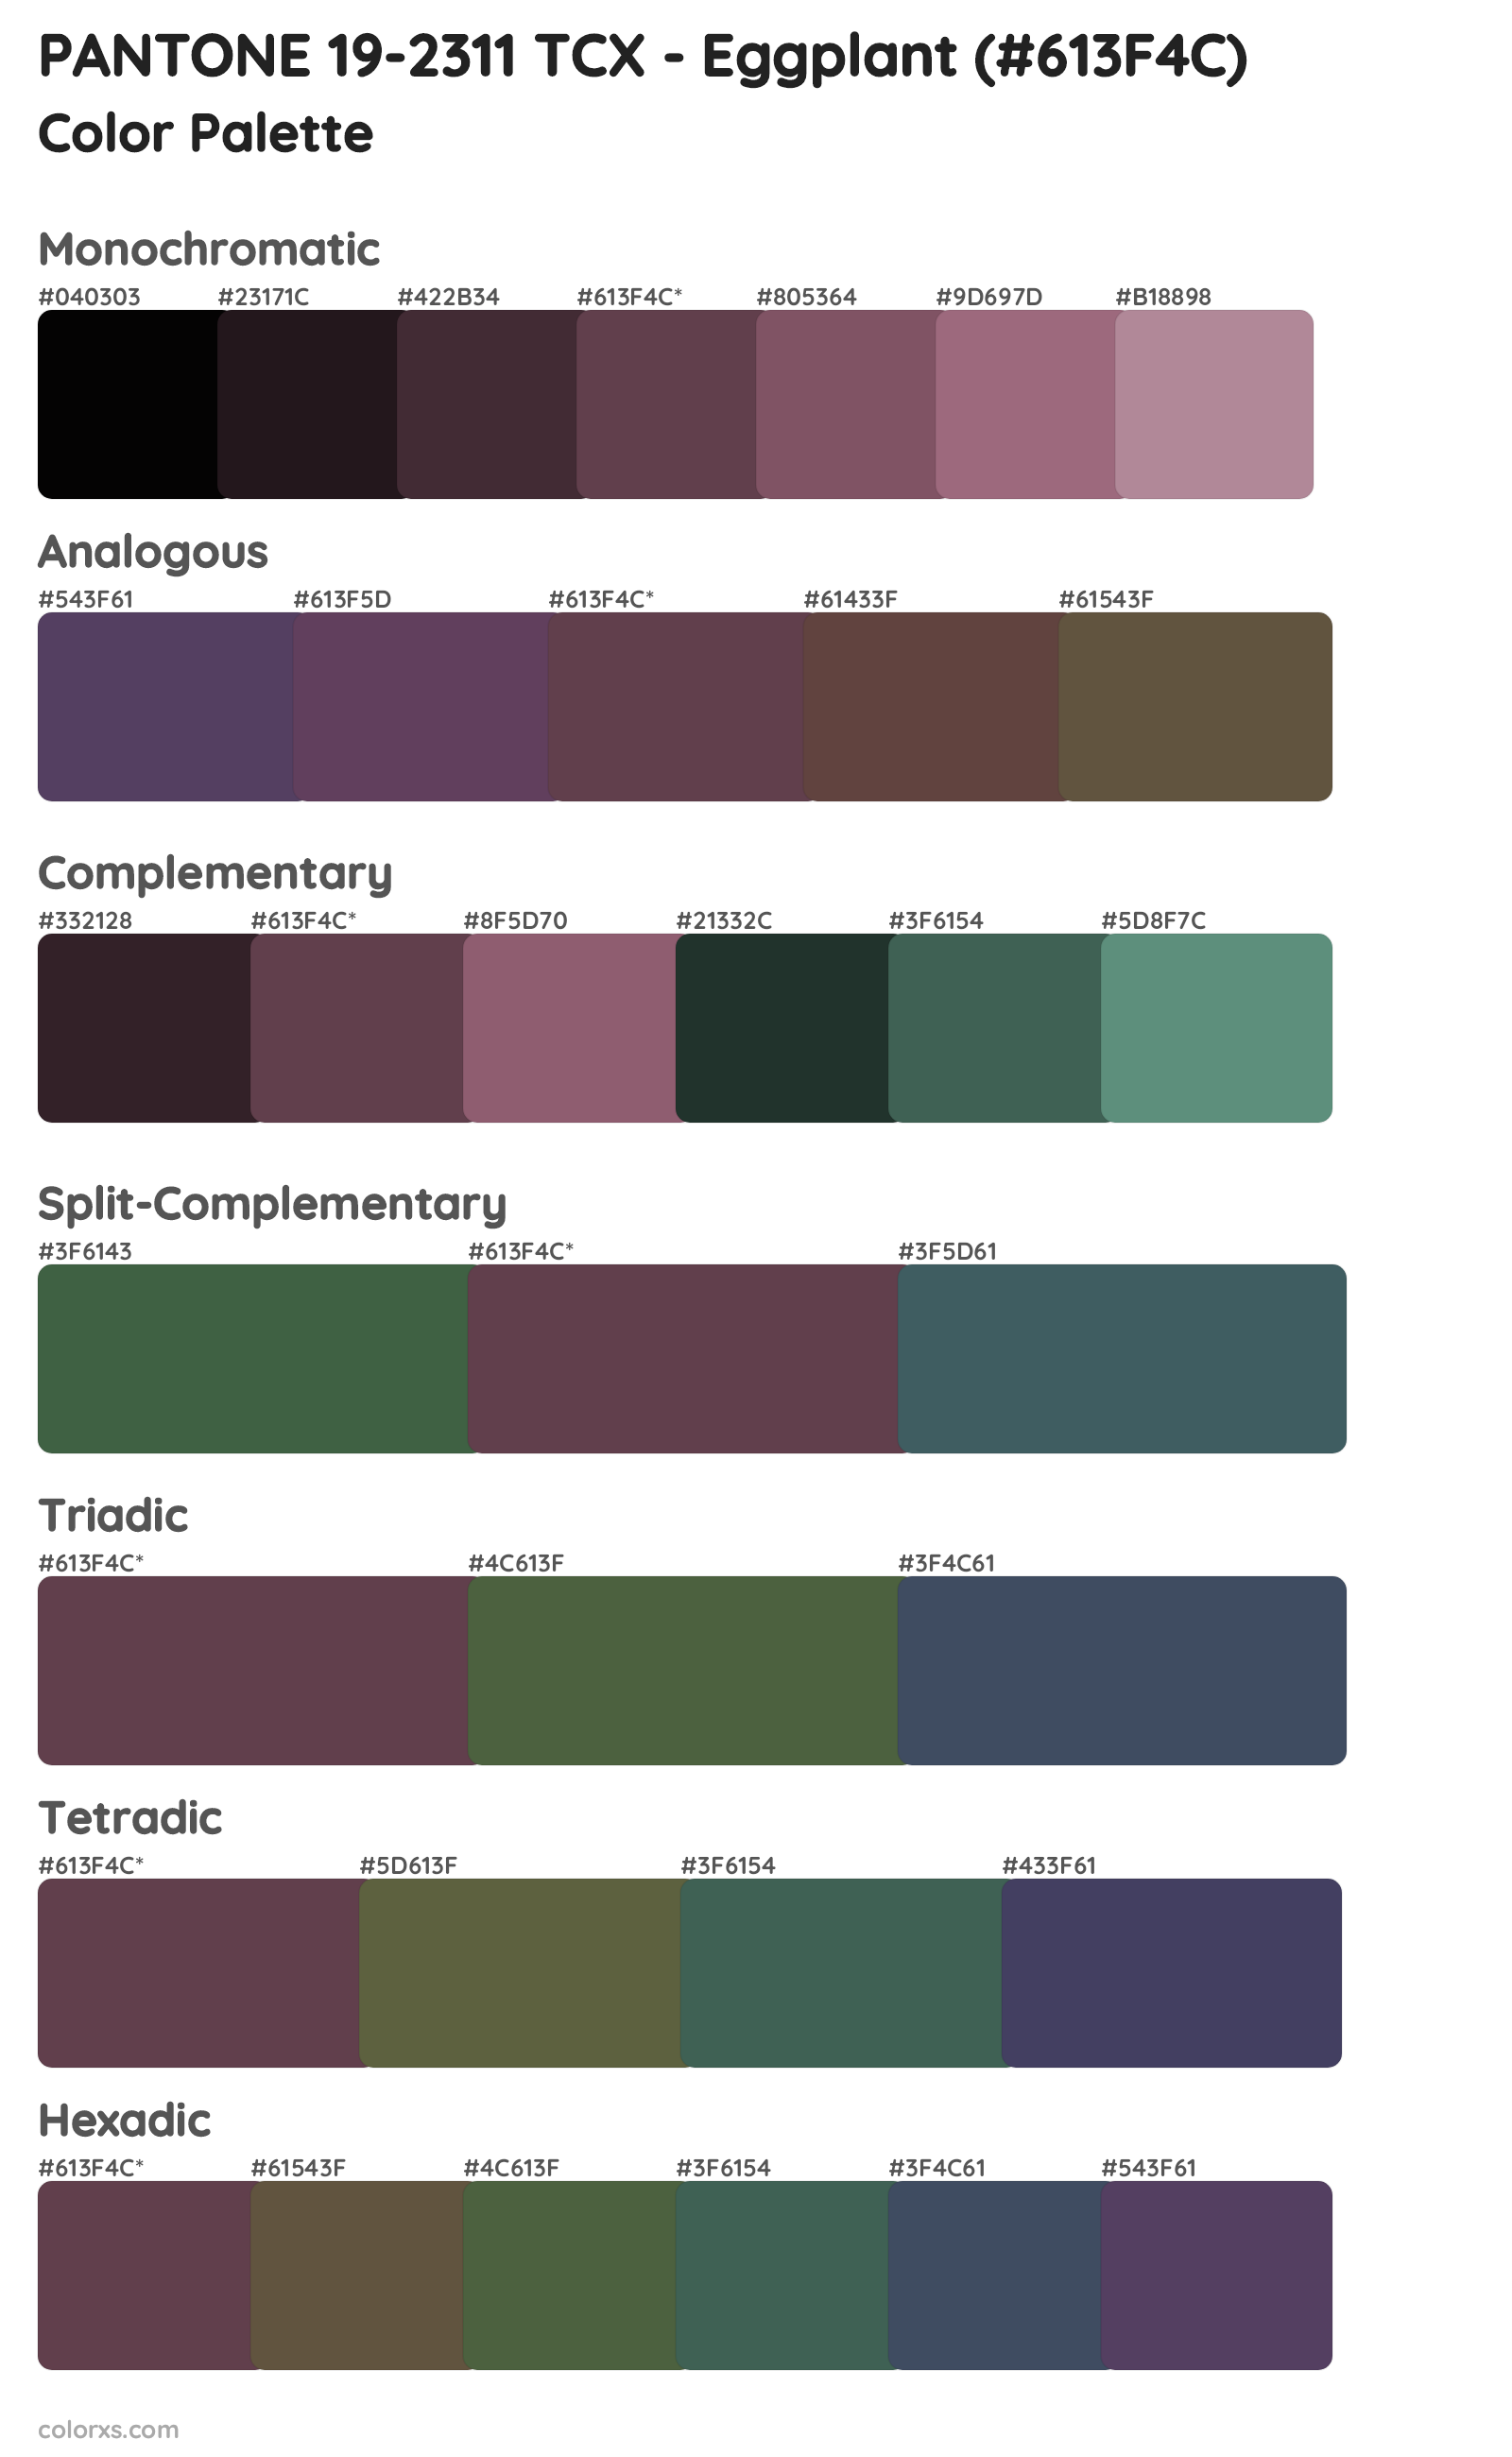 PANTONE 19-2311 TCX - Eggplant Color Scheme Palettes